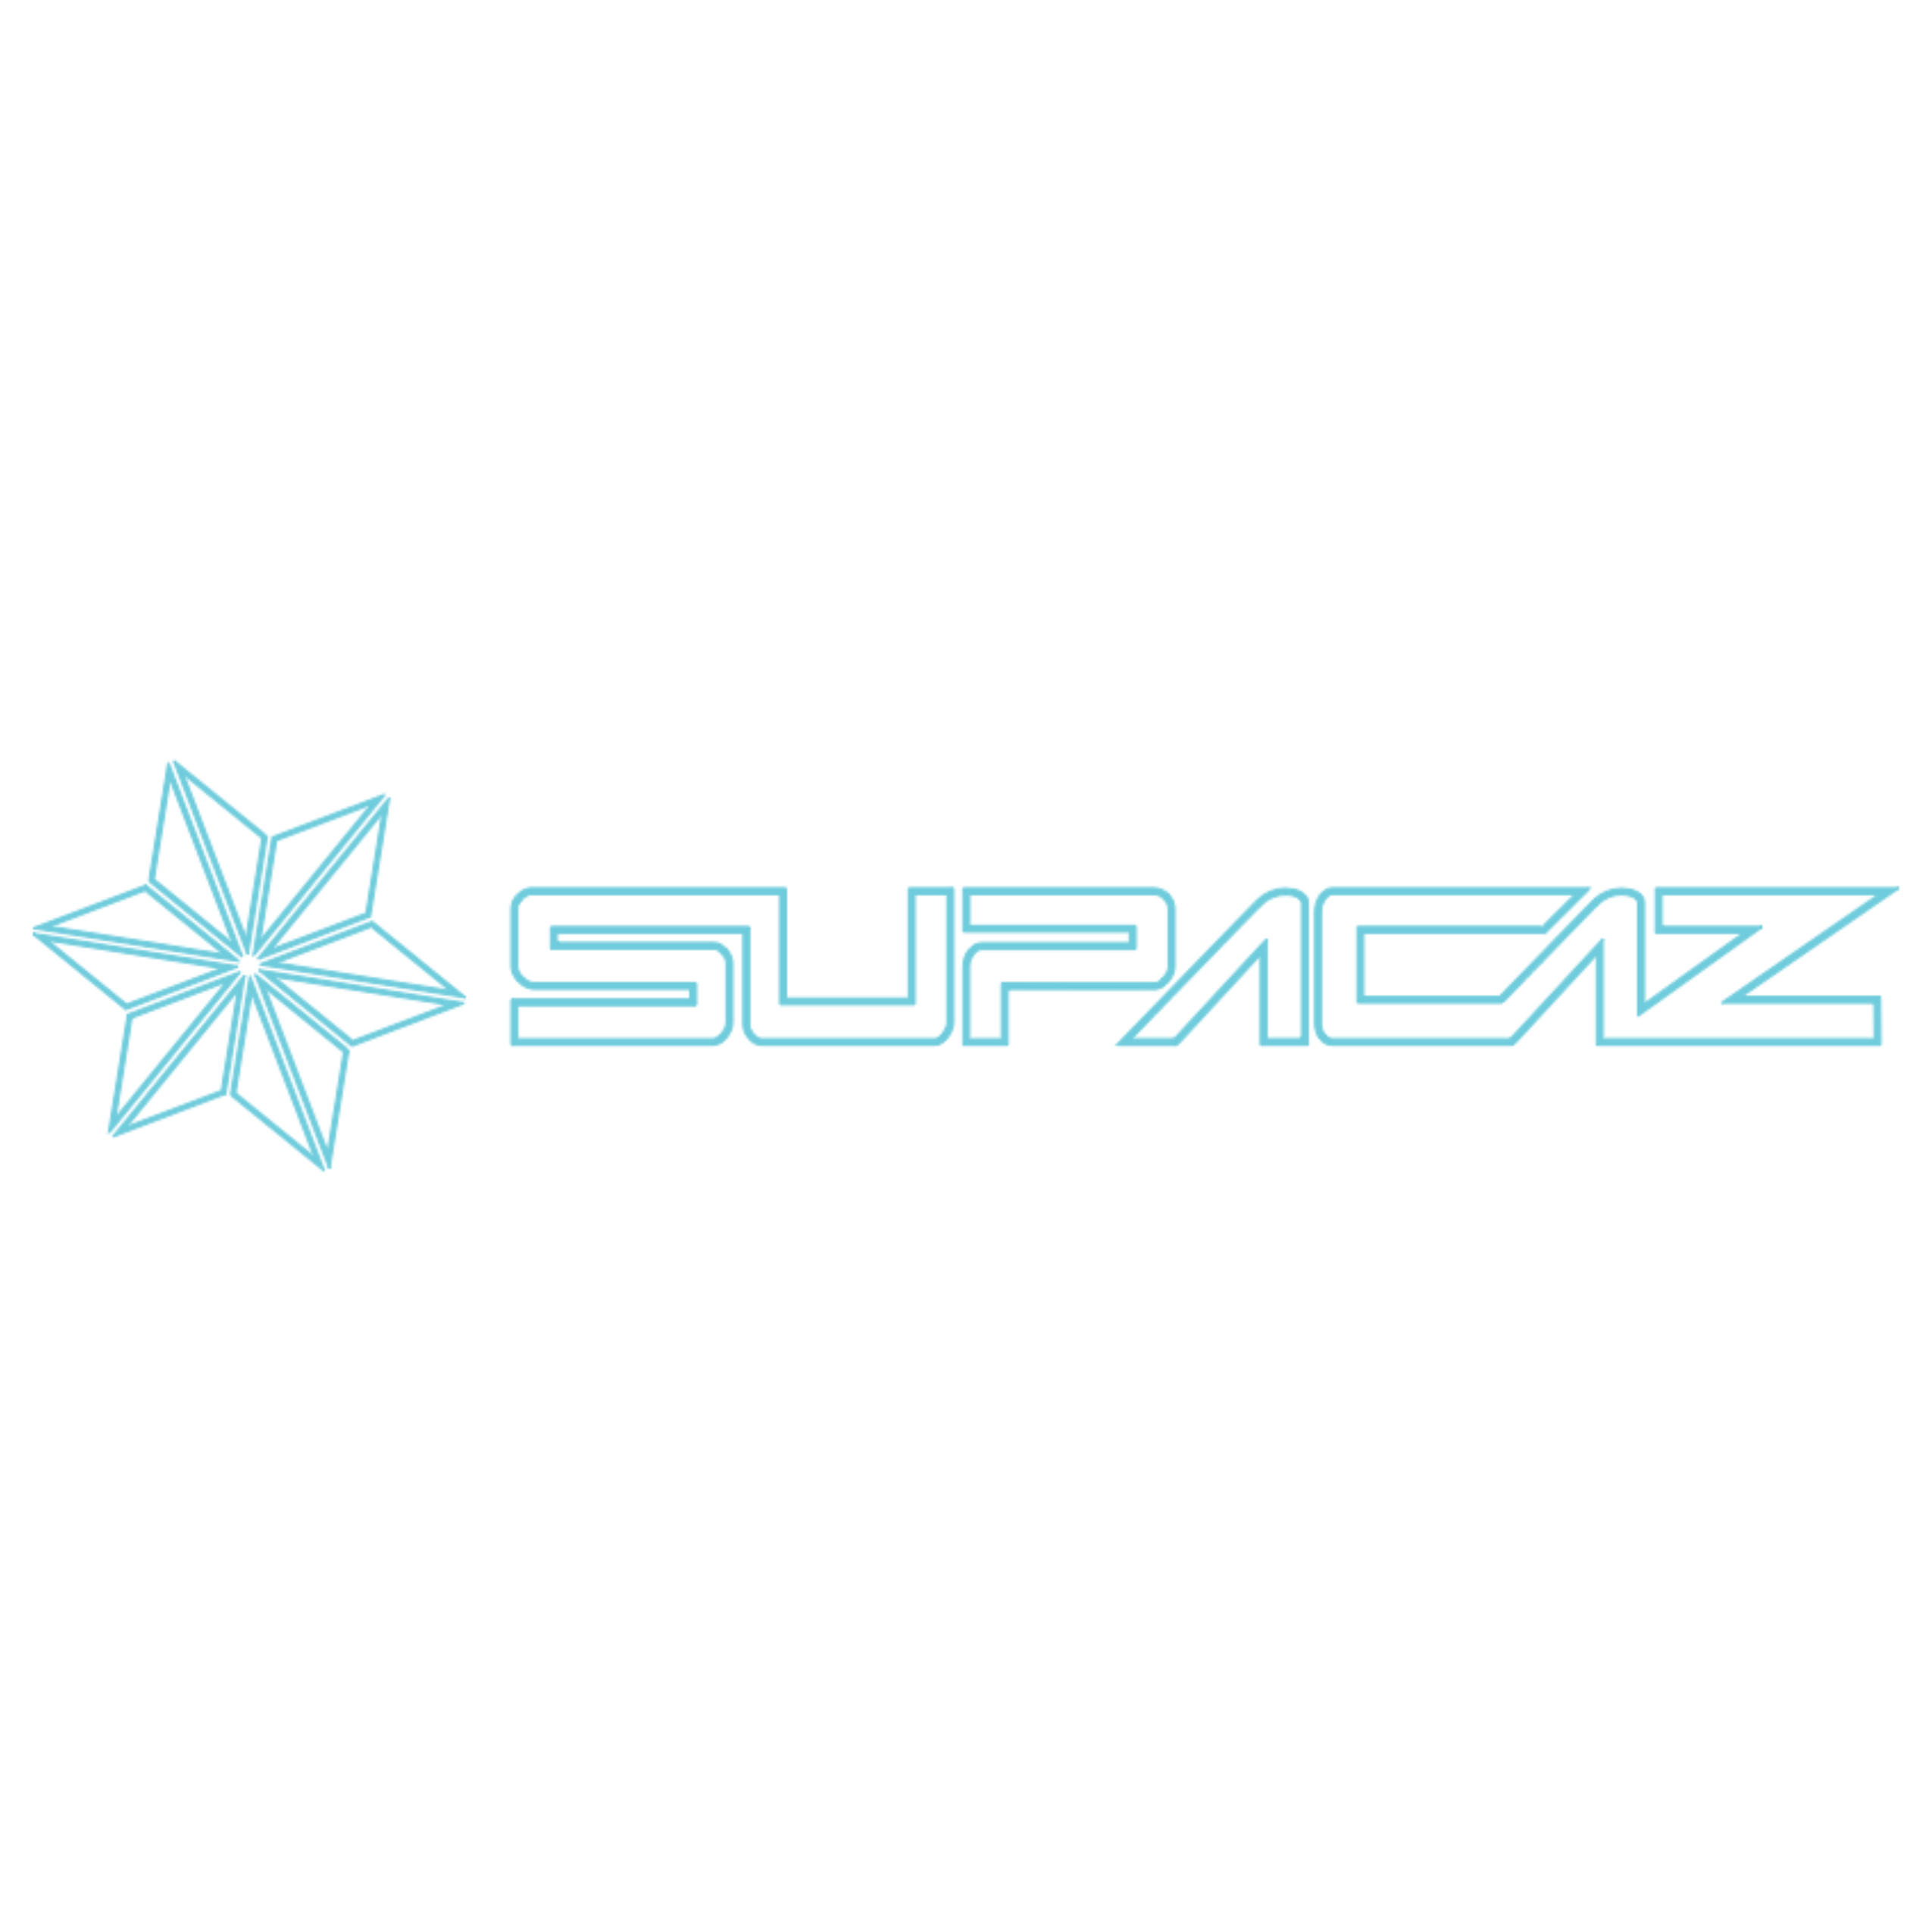 Logo Supacaz